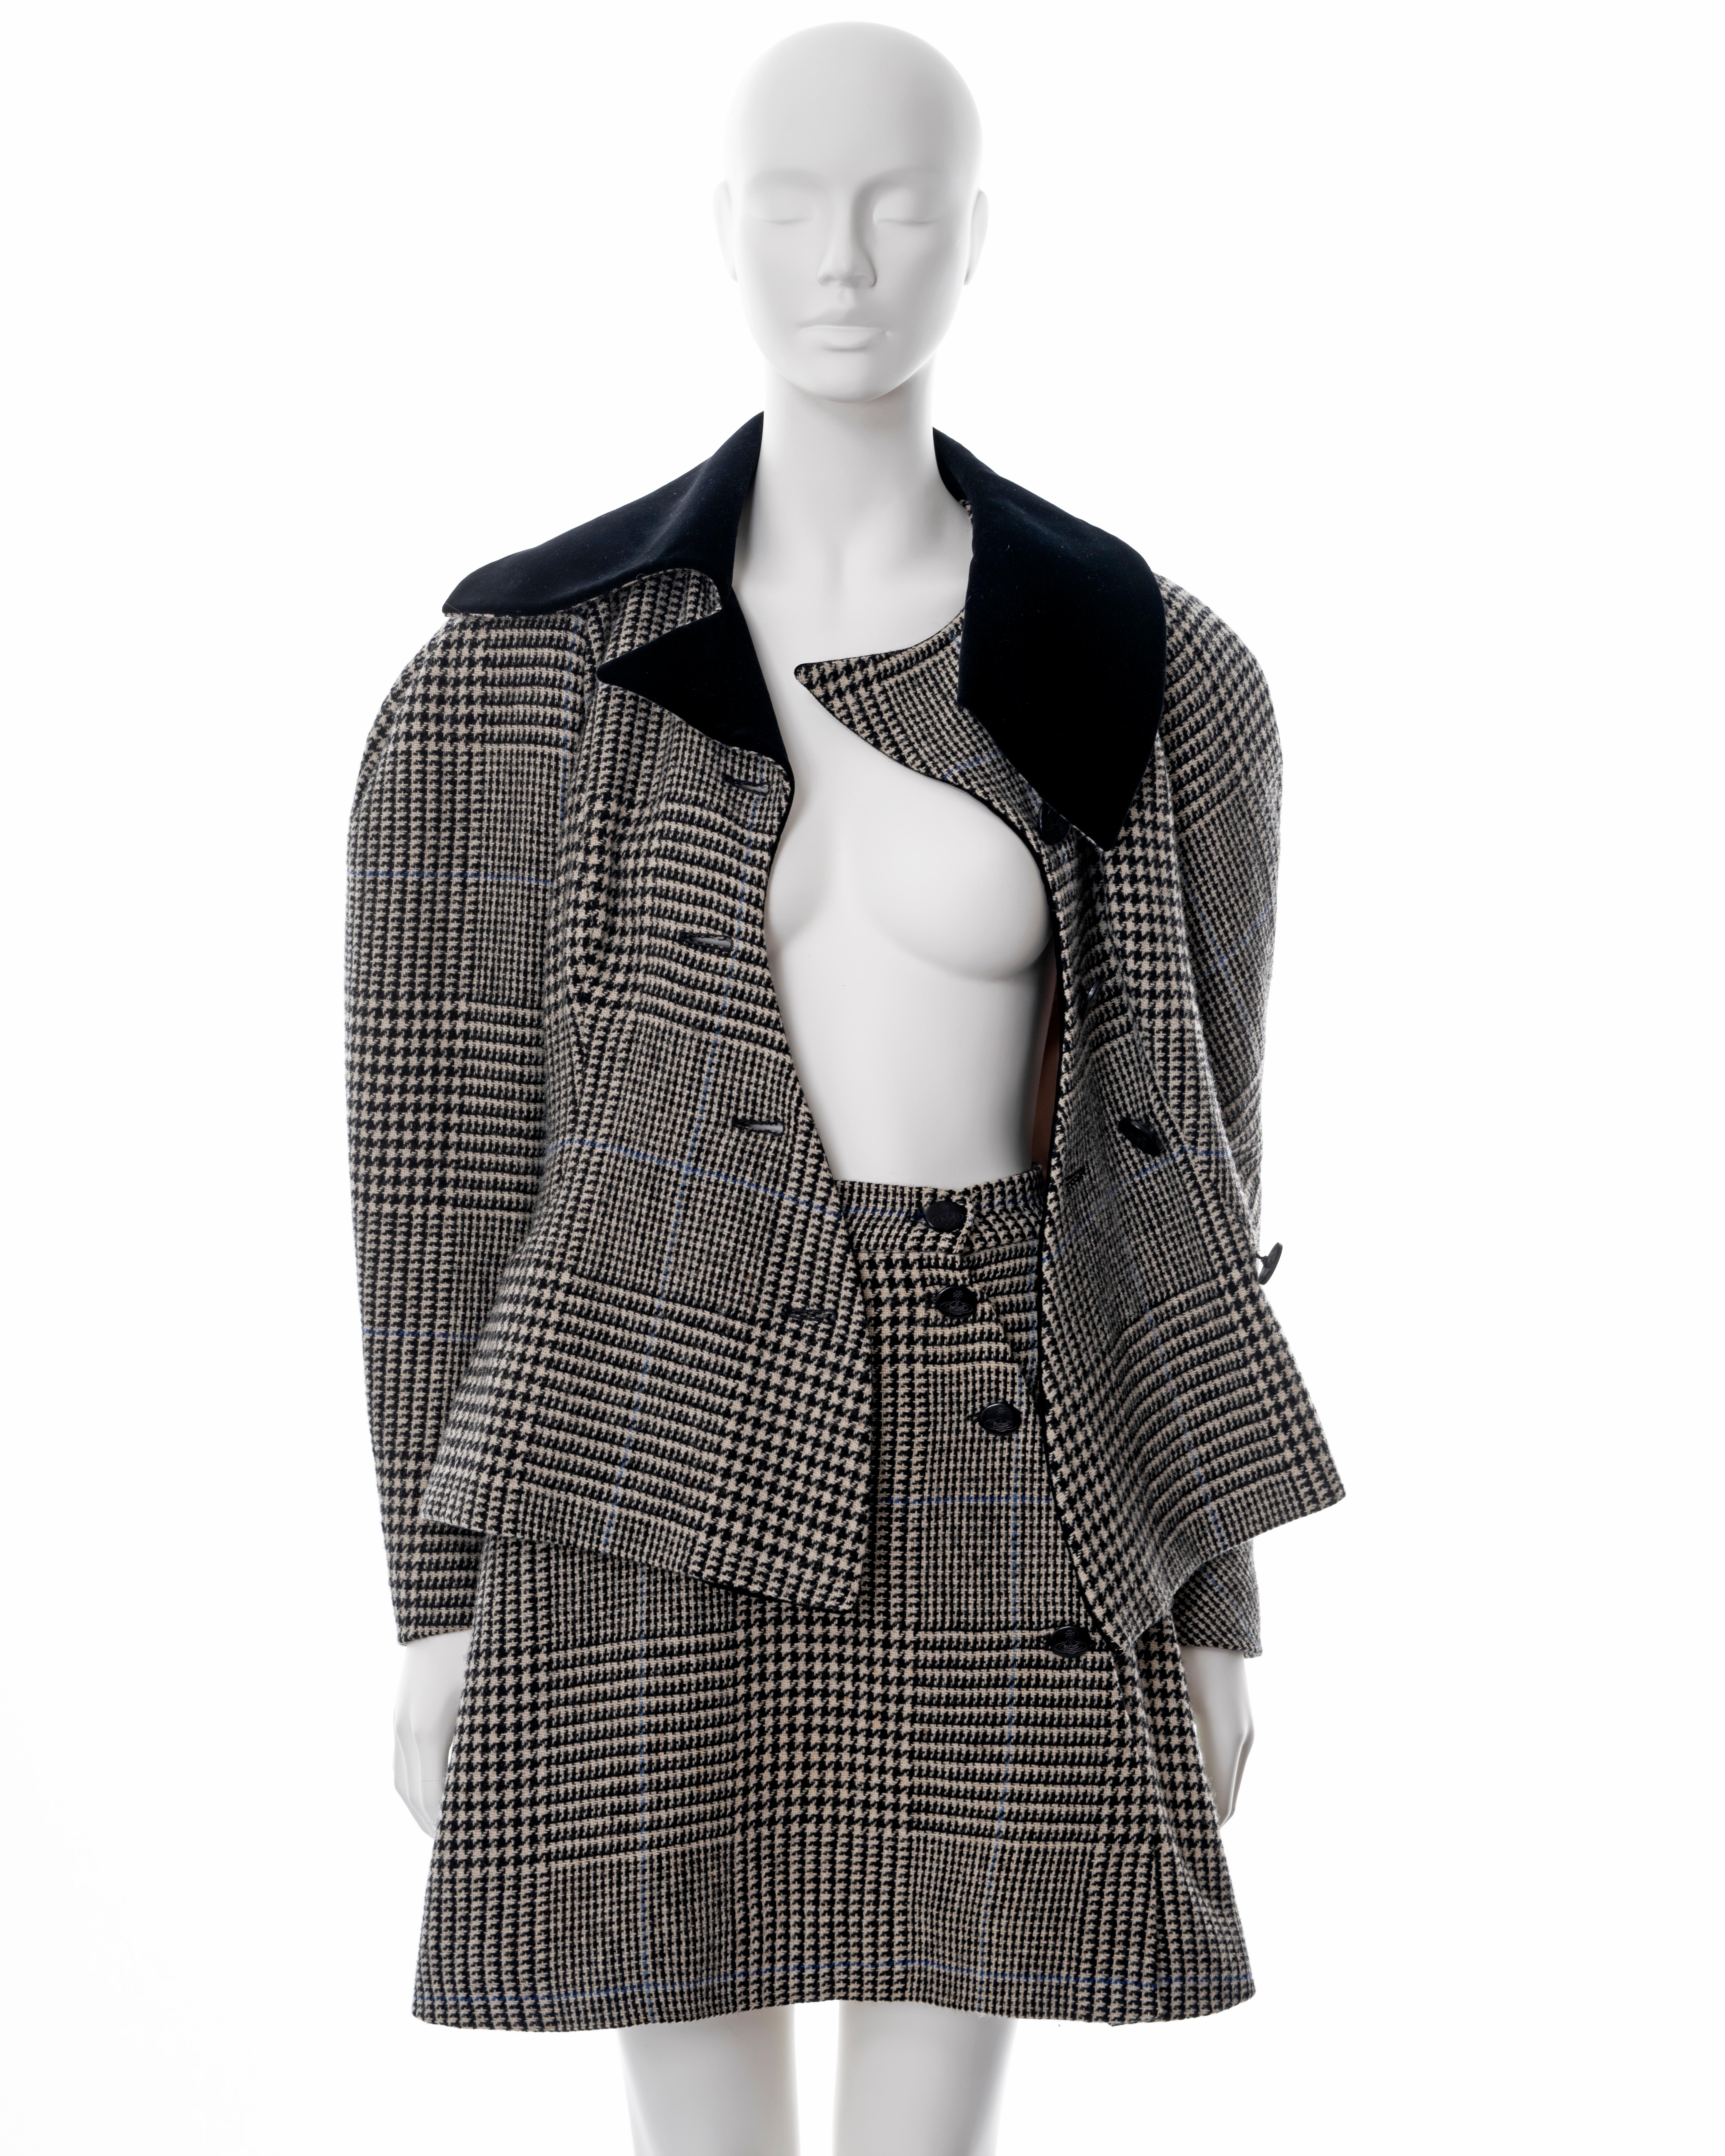 Vivienne Westwood grey houndstooth check tweed skirt suit, fw 1996 7